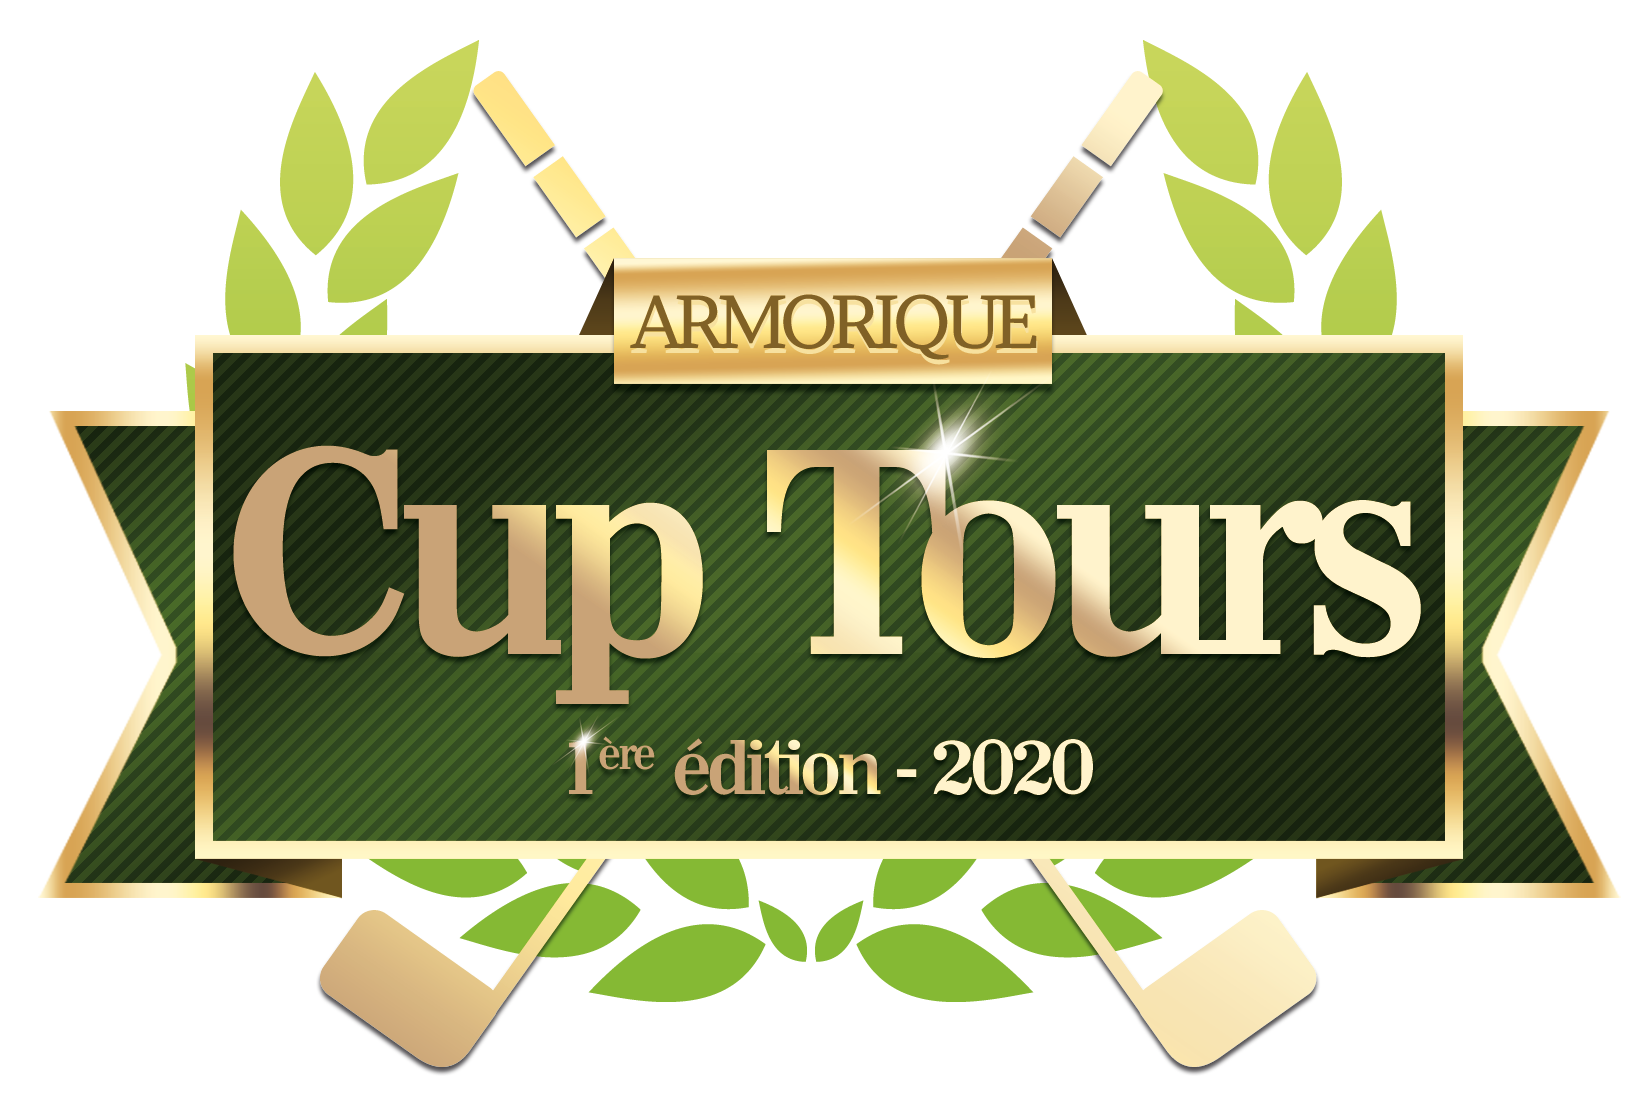 ARMORIQUE CUP TOURS